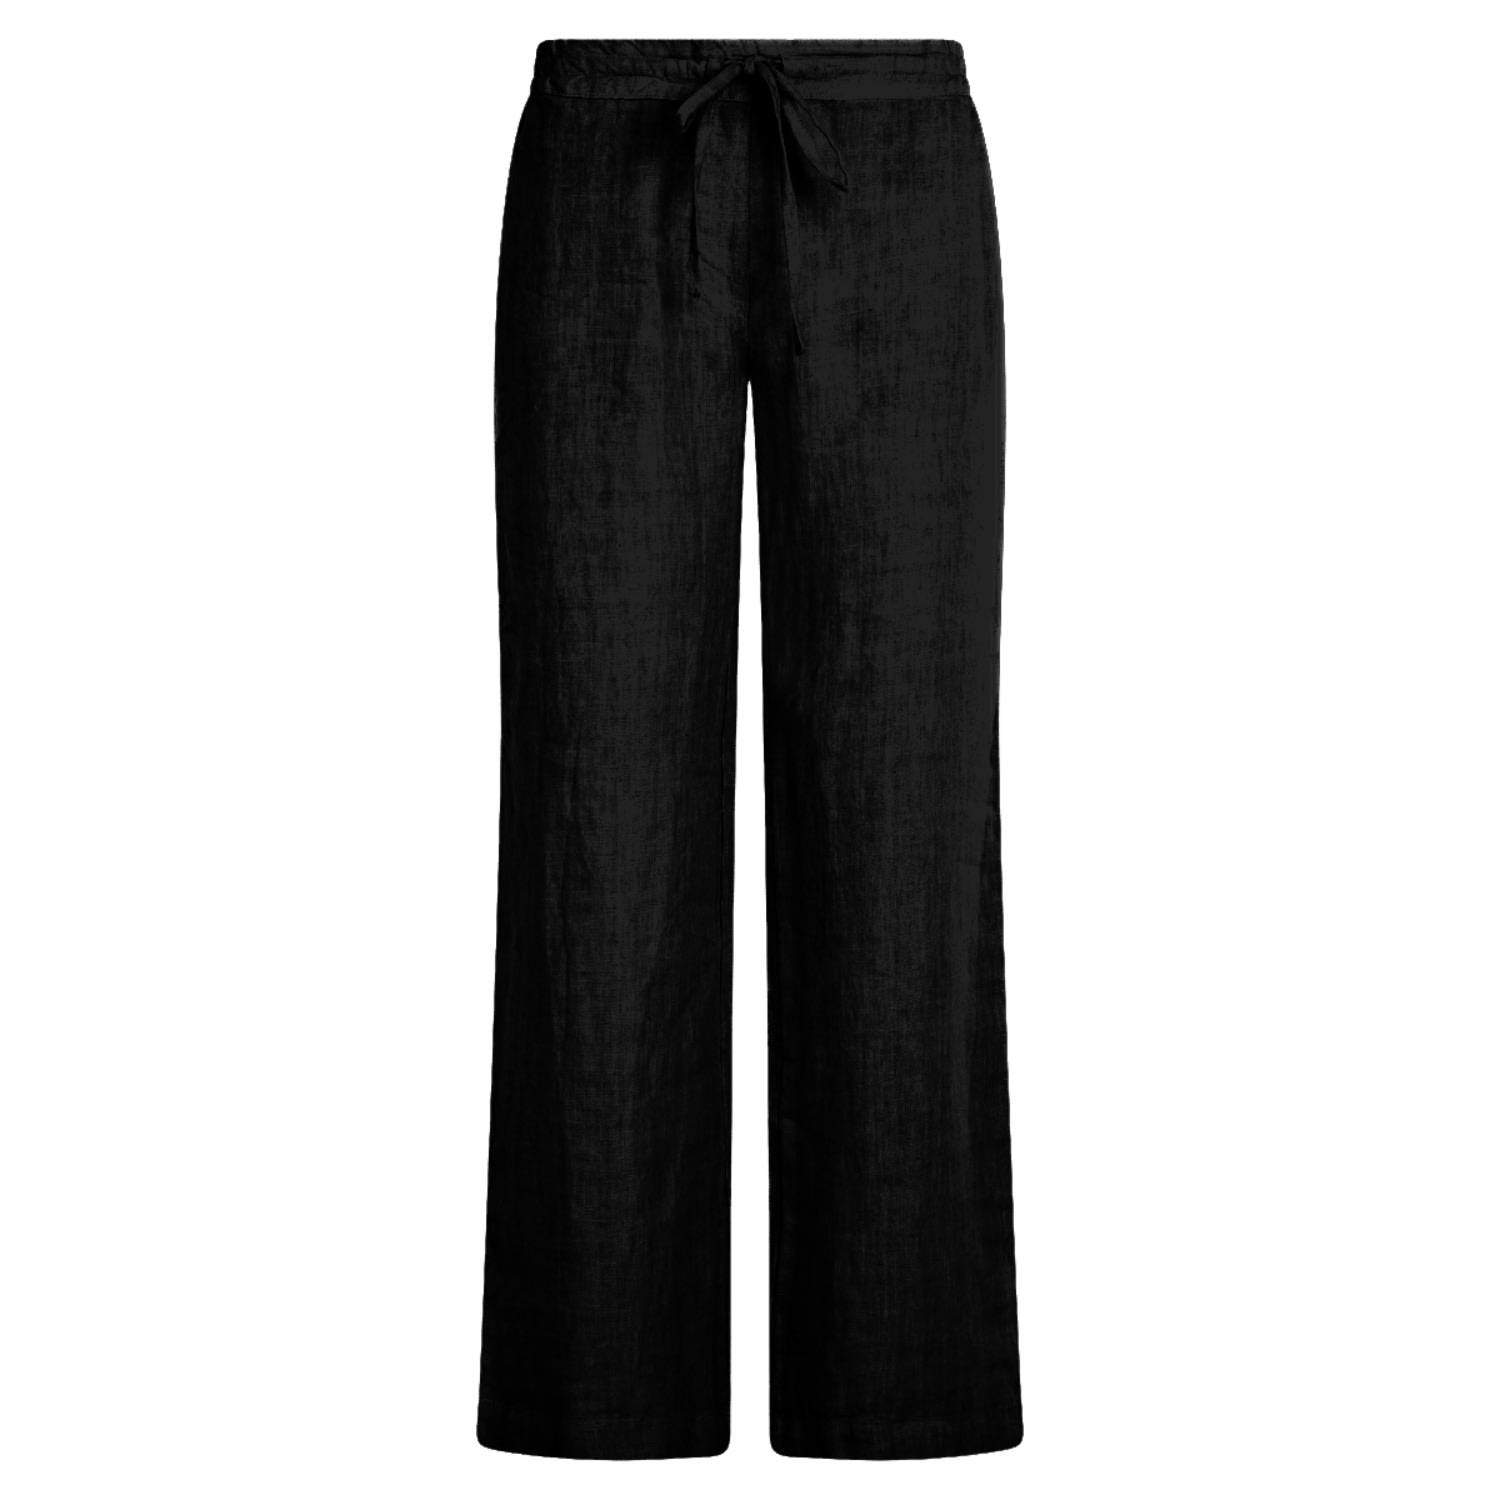 Haris Cotton Women's Wide Legged Linen Pants - Black